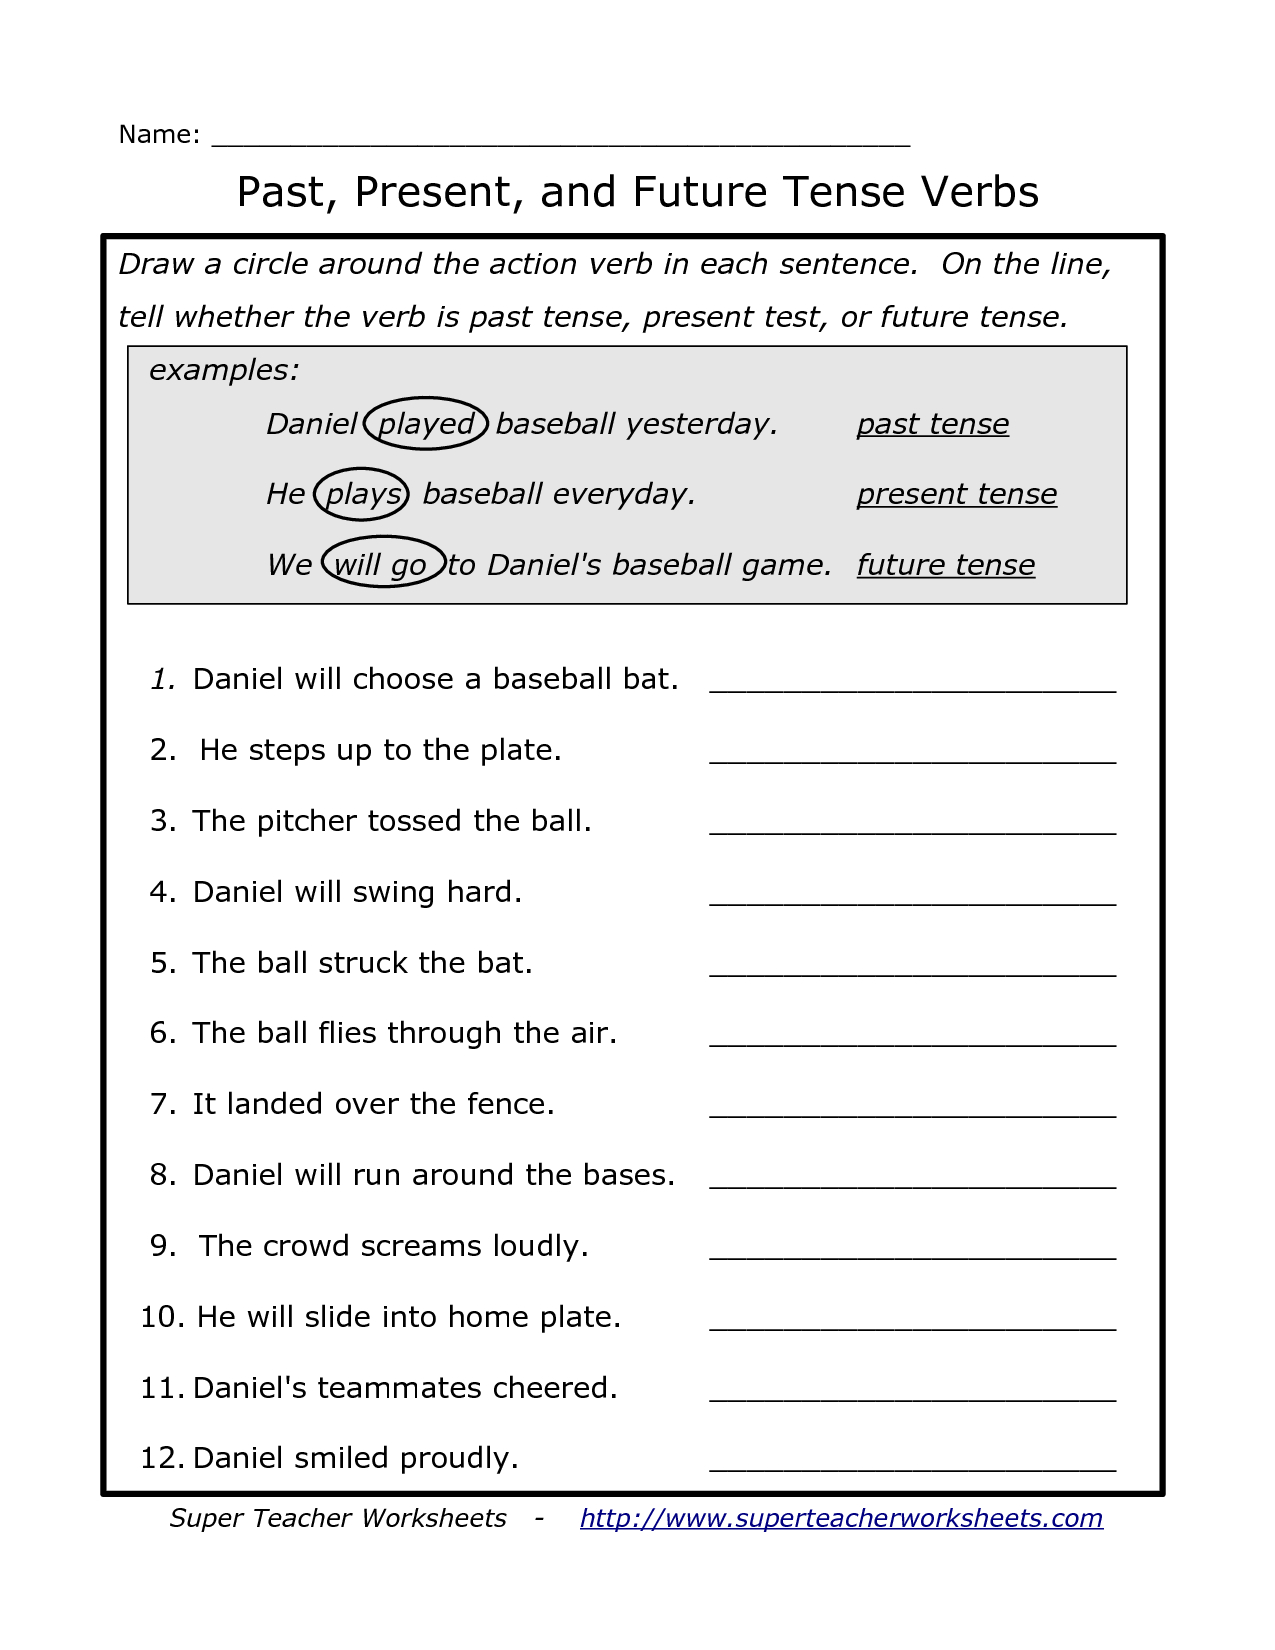 Free Printable Past Tense Verbs Worksheets Free Printable